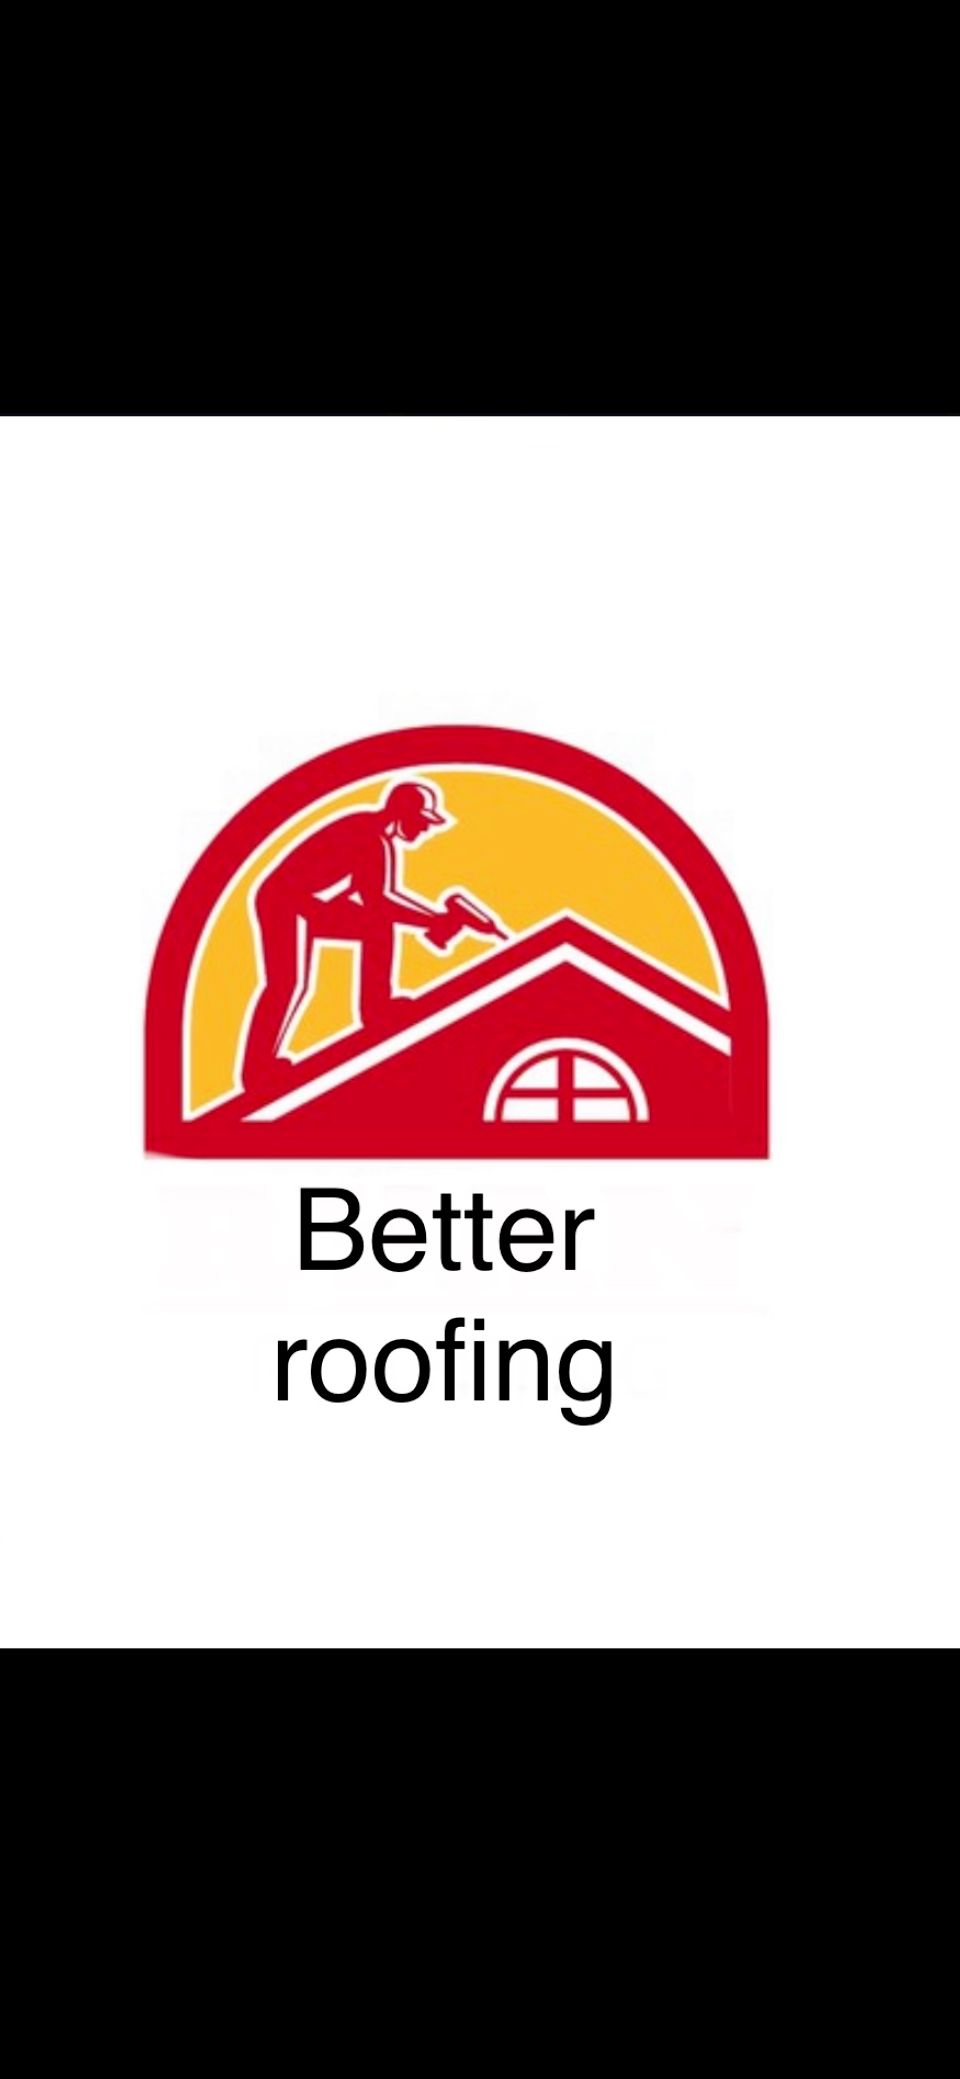 Better roofing Leak stopper